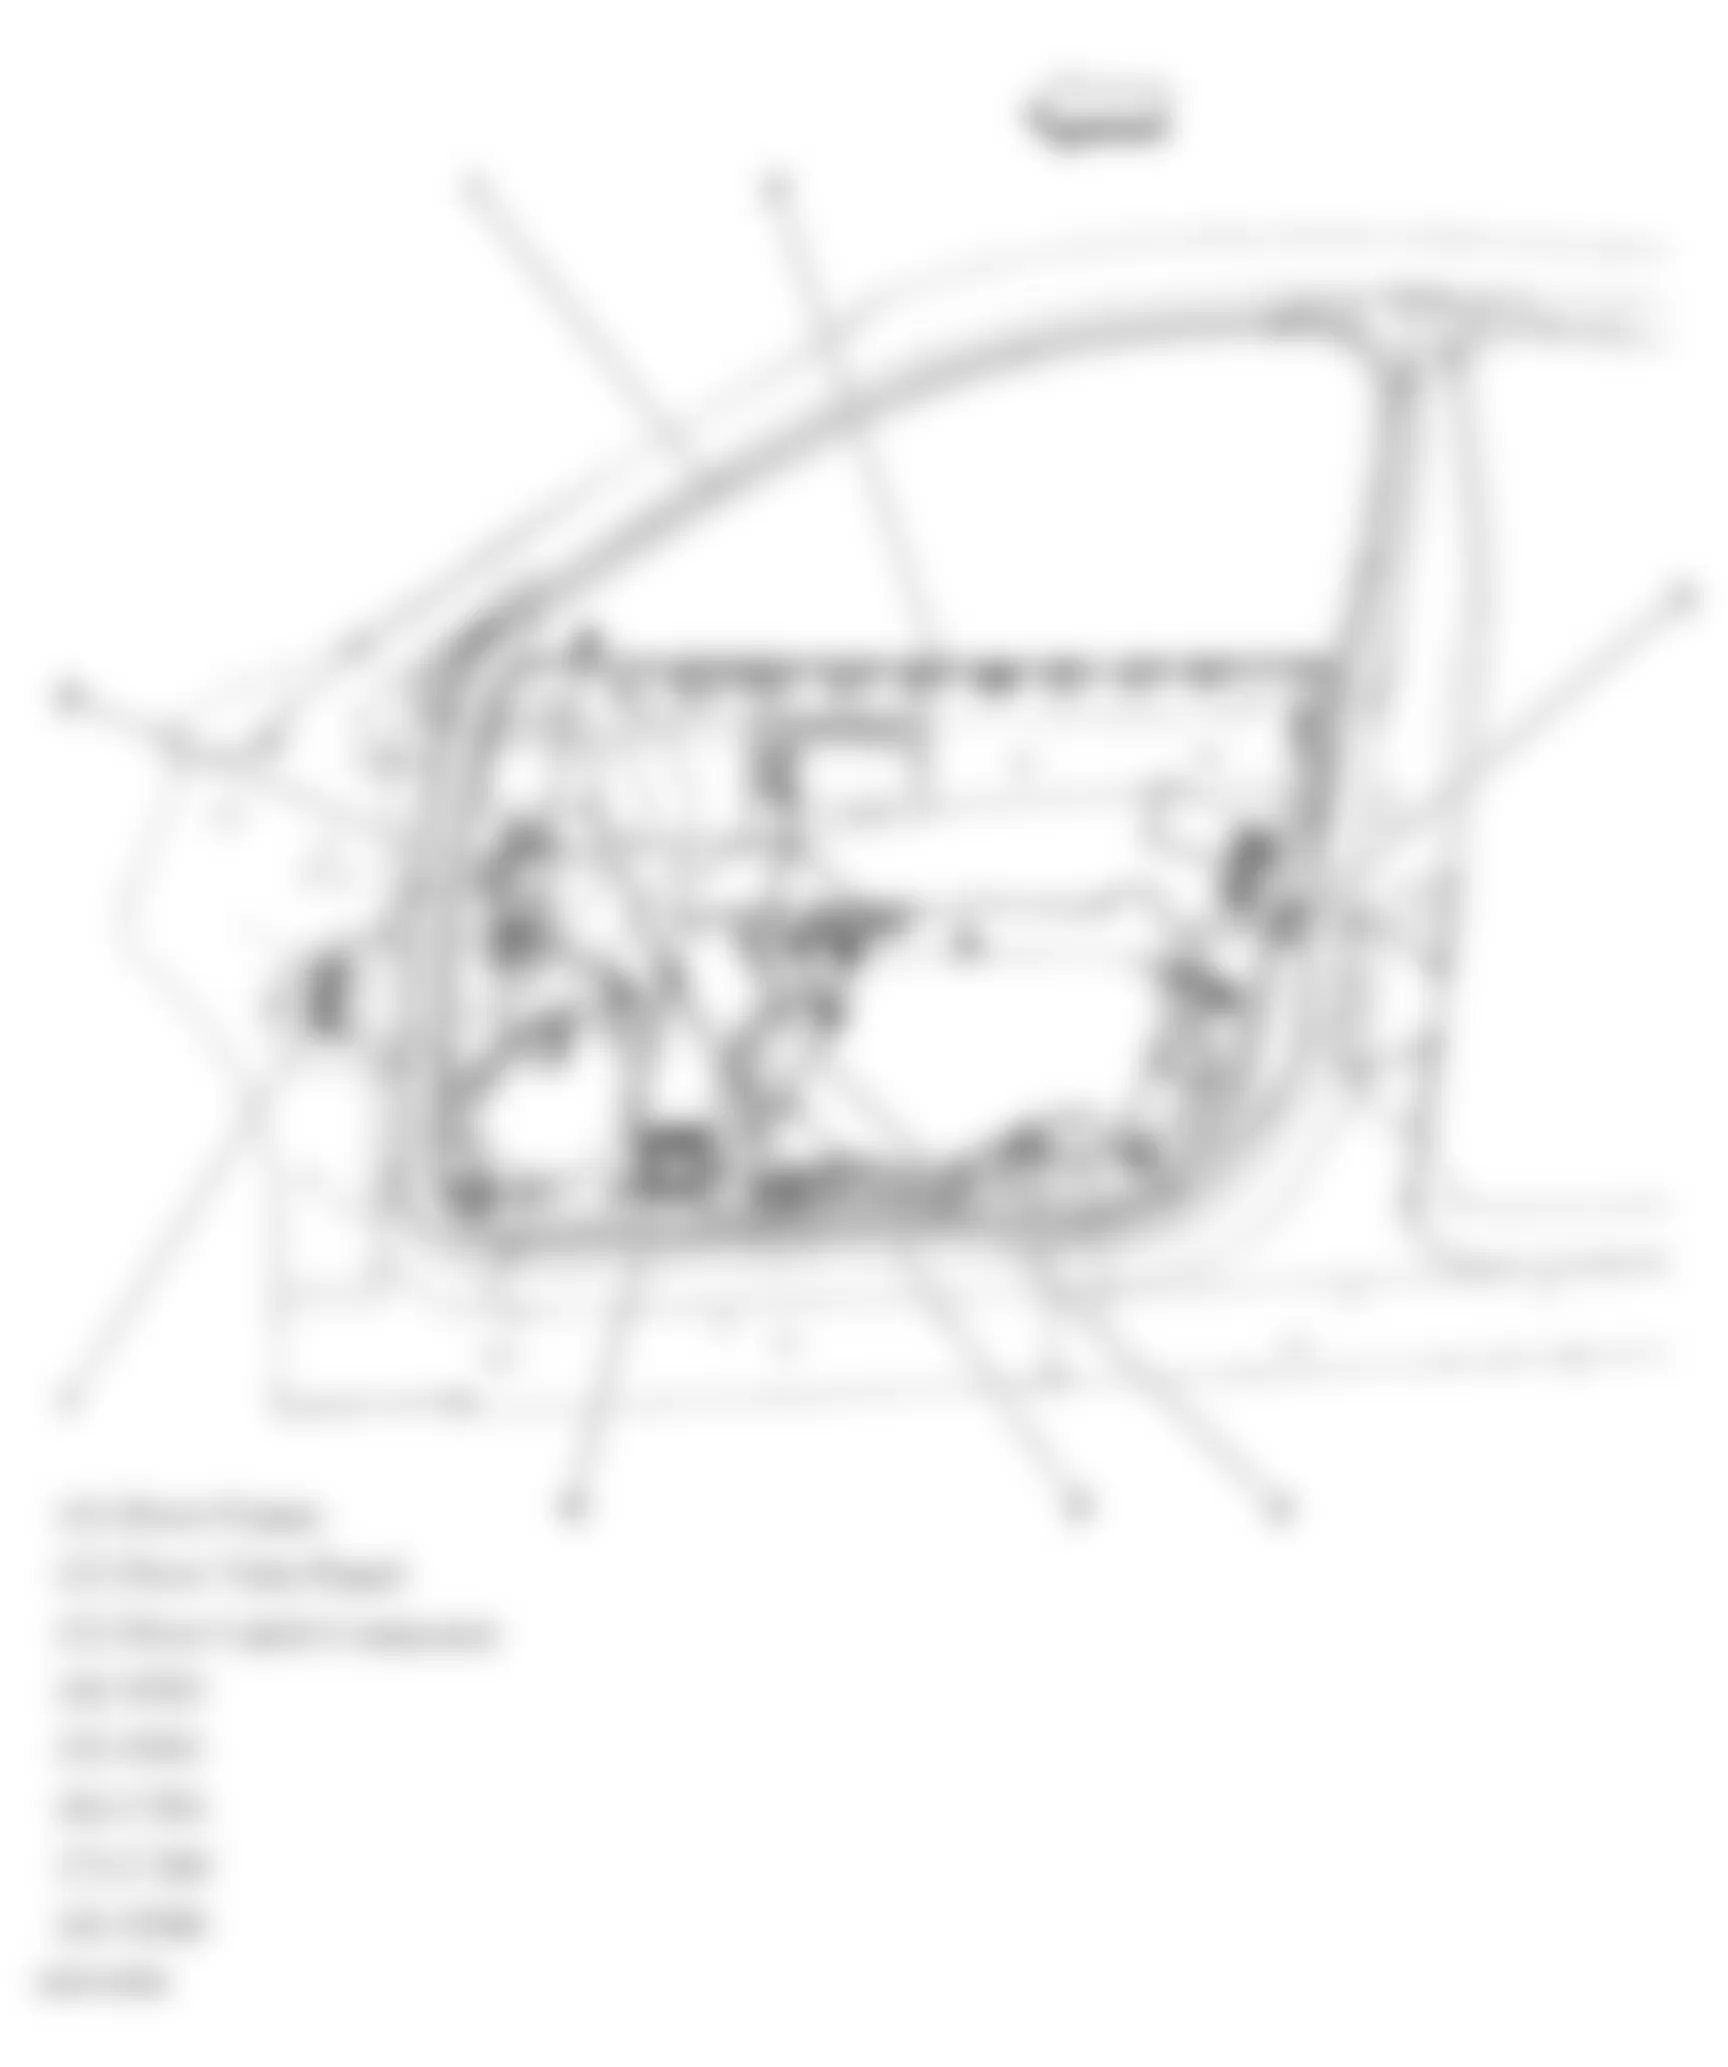 Buick Allure CXL 2006 - Component Locations -  Drivers Door